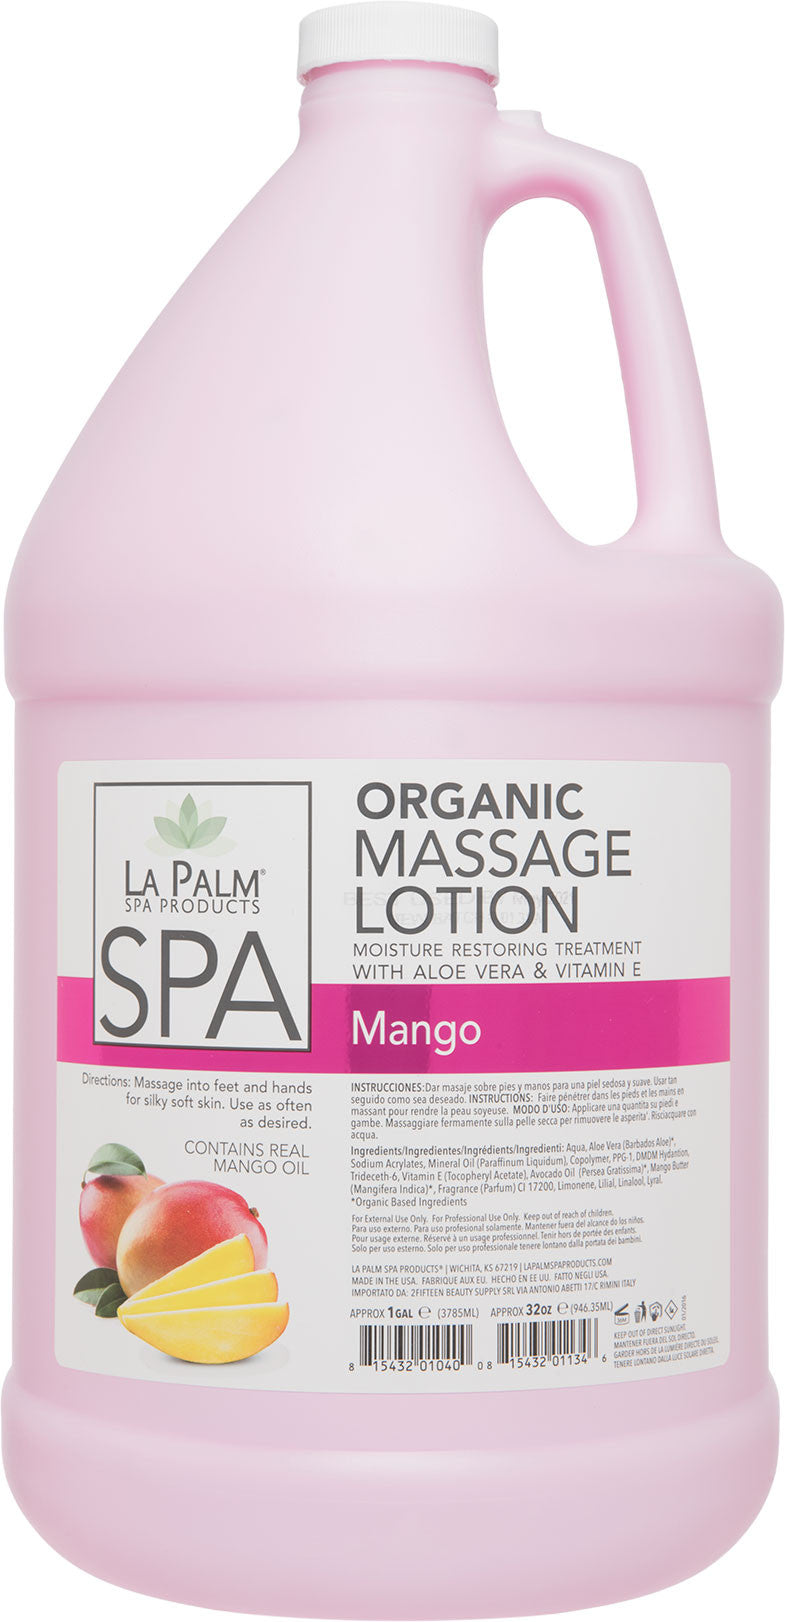 La Palm - Organic Massage Lotion Mango